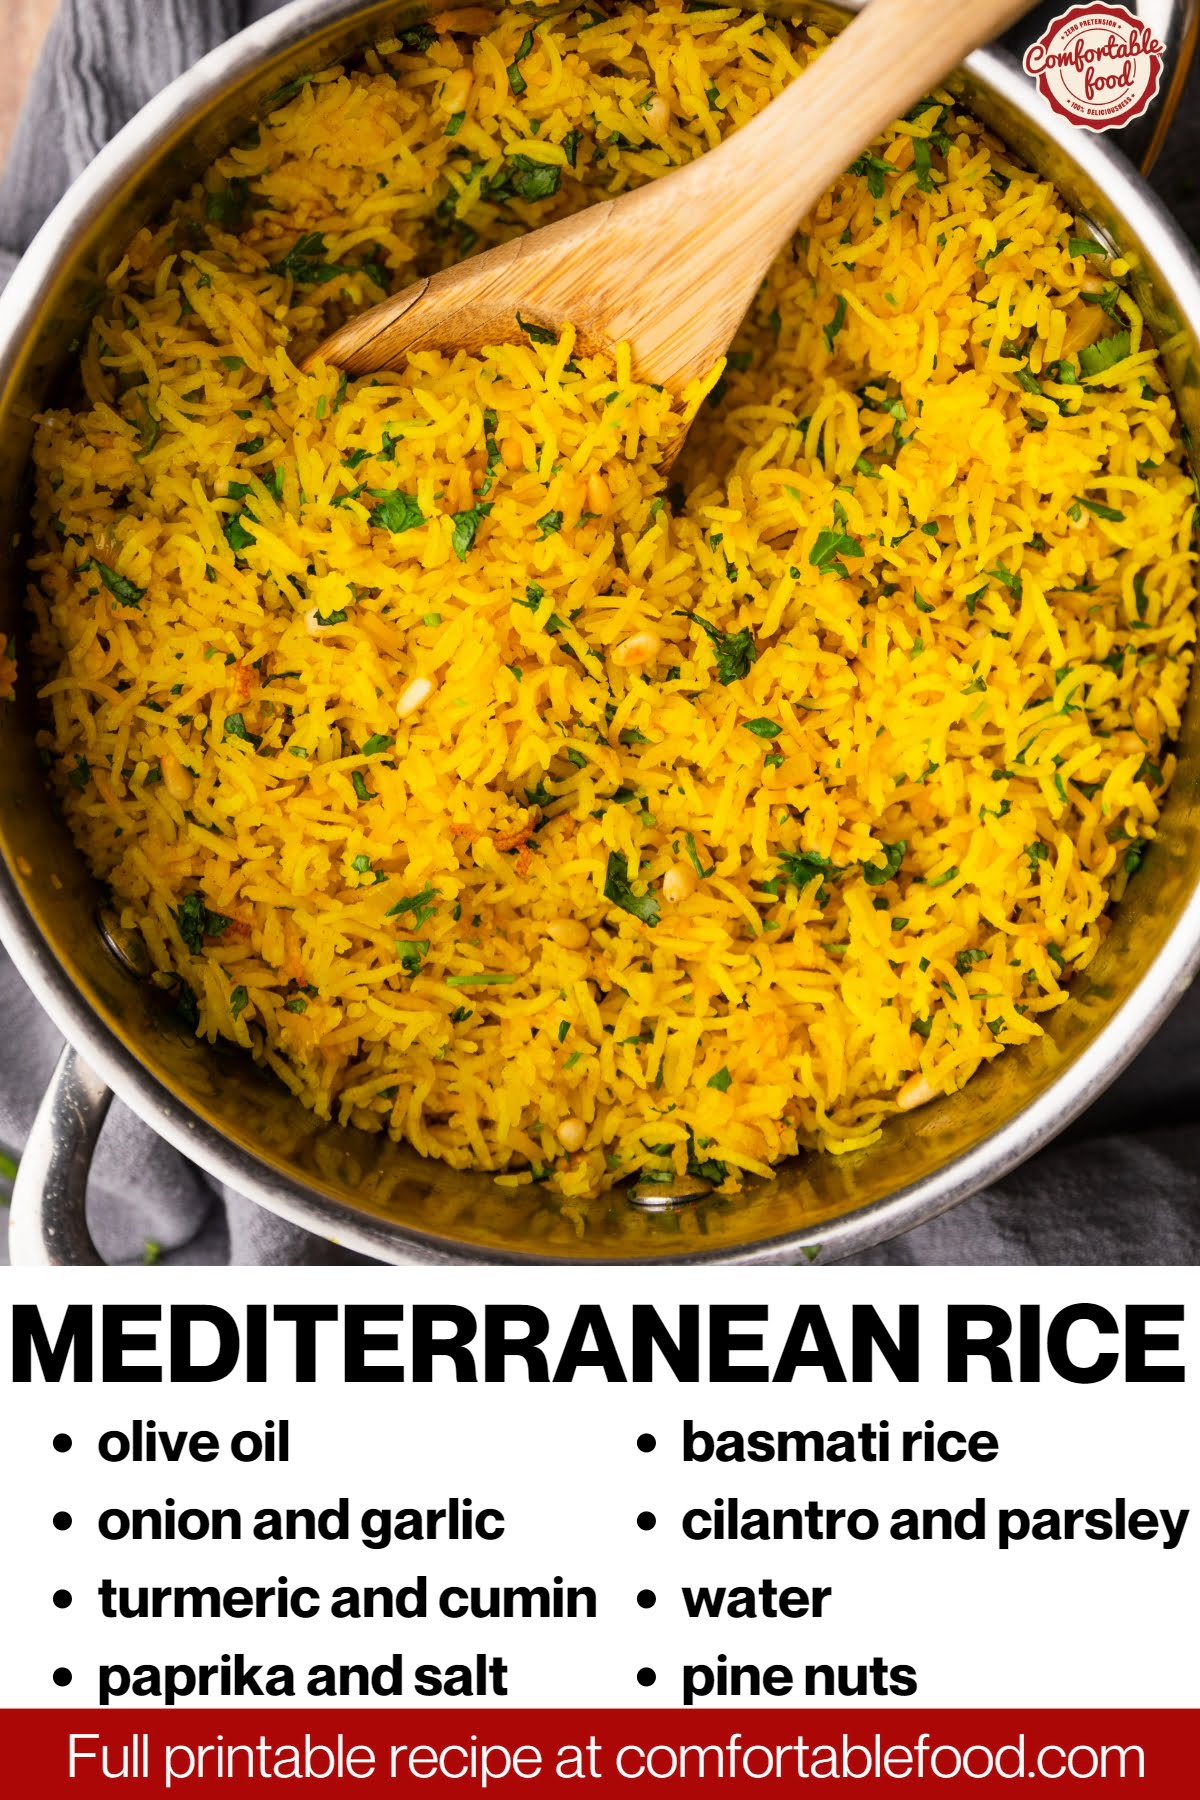 Mediterranean-rice socials